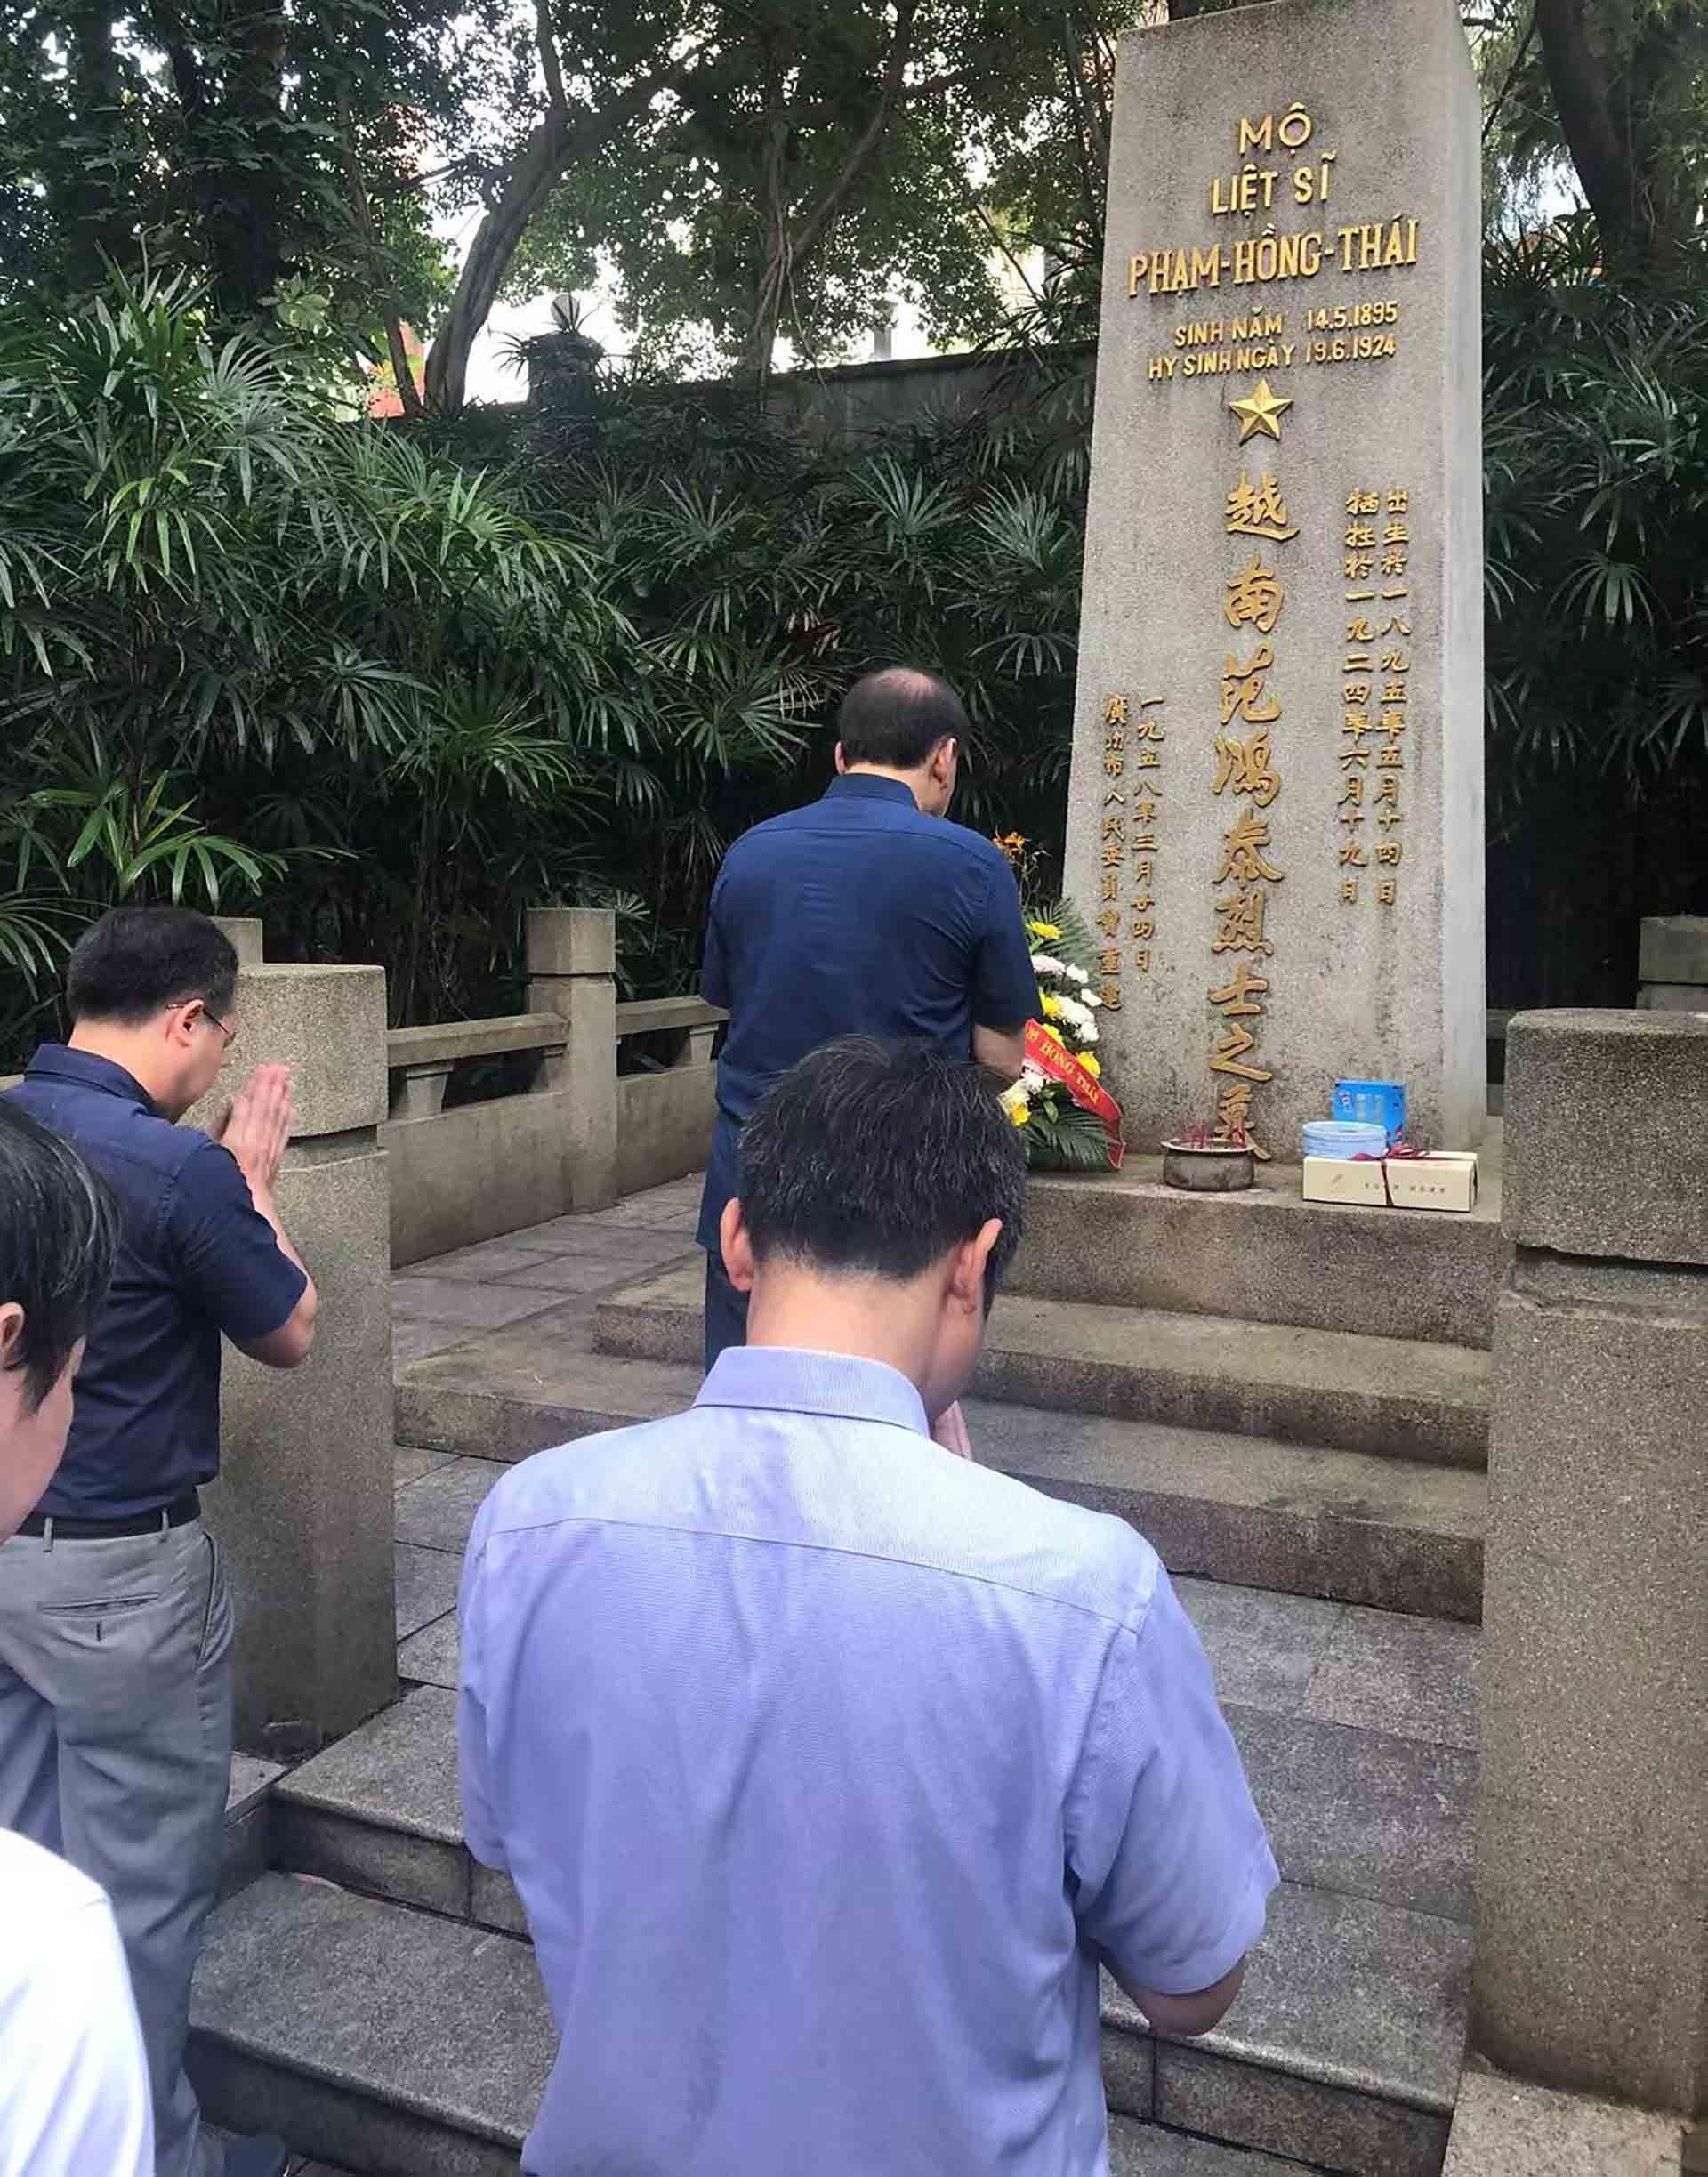 Tổng lãnh sự Vũ Việt Anh và toàn thể cán bộ, nhân viên Tổng lãnh sự quán Việt Nam tại Quảng Châu (Trung Quốc) đến đặt vòng hoa, dâng hương tưởng niệm Liệt sĩ Phạm Hồng Thái.